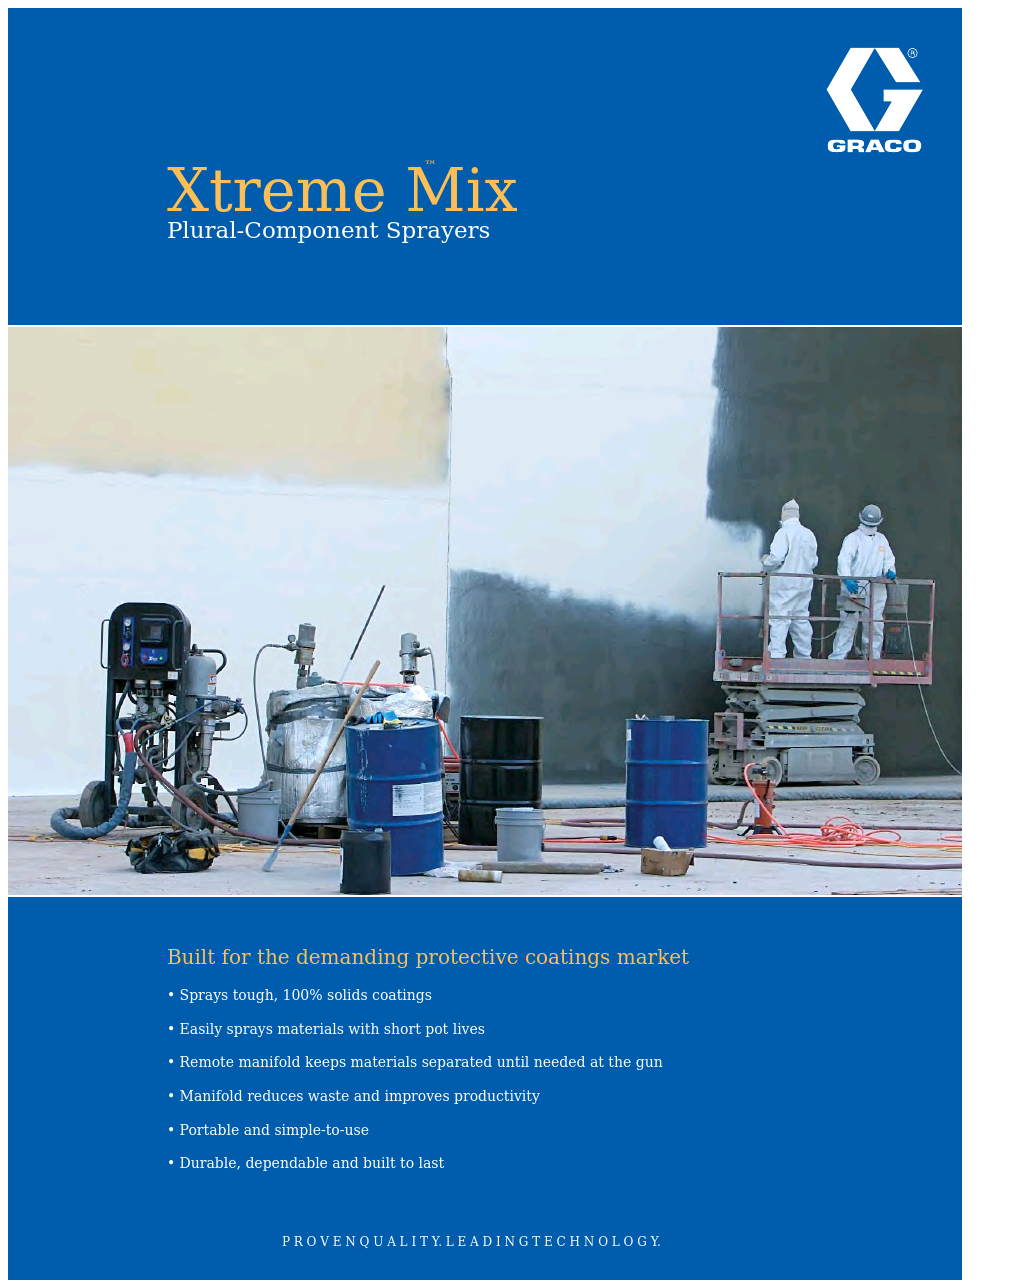 Xtreme Mix XTR504